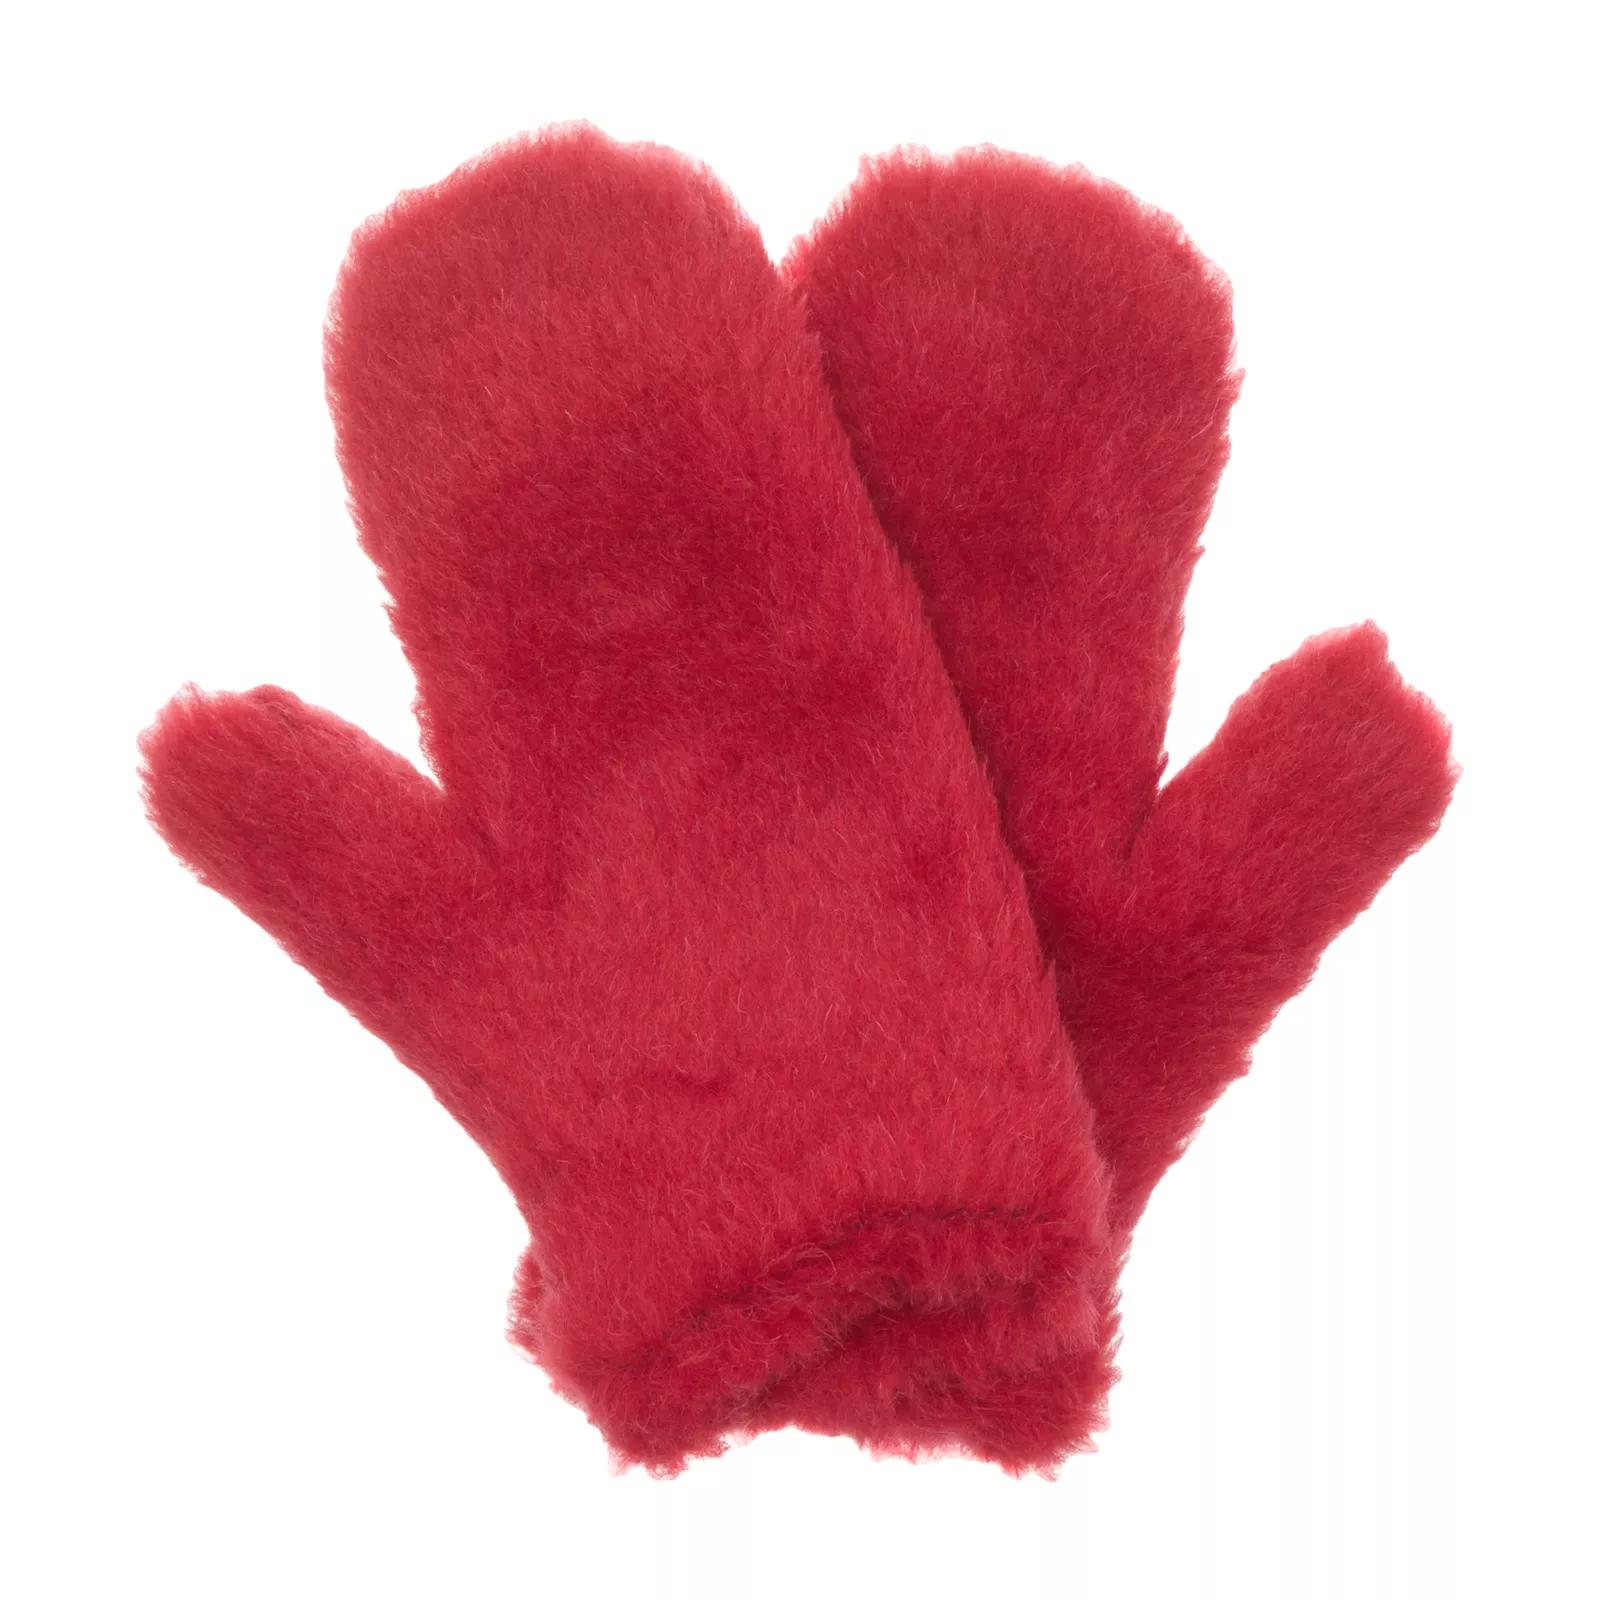 Max Mara Handschuhe - Ombrato - Gr. M/L - in Rot - für Damen von Max Mara